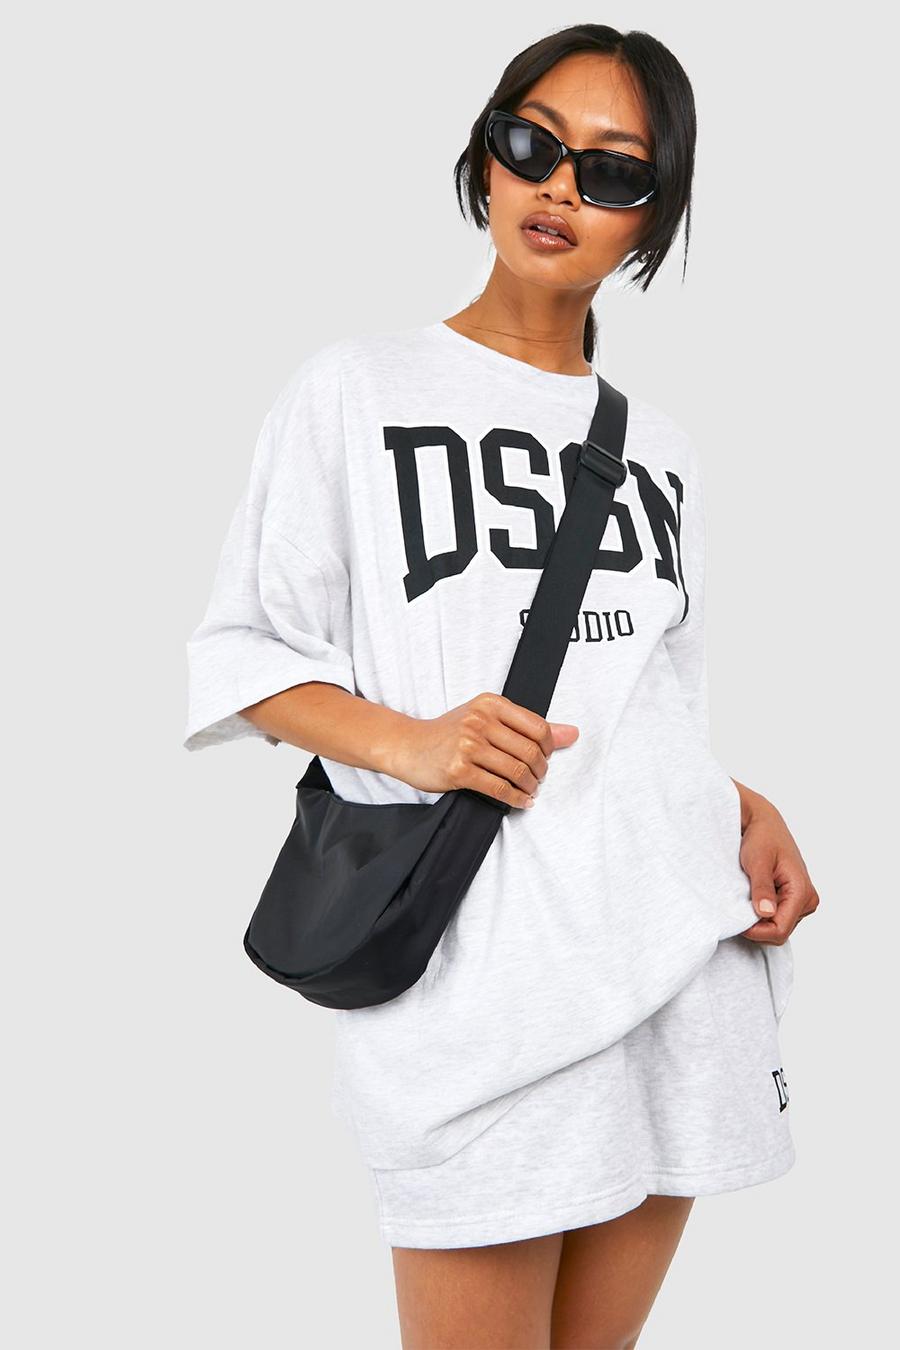 T-Shirt mit Dsgn Studio Slogan & Shorts, Ash grey